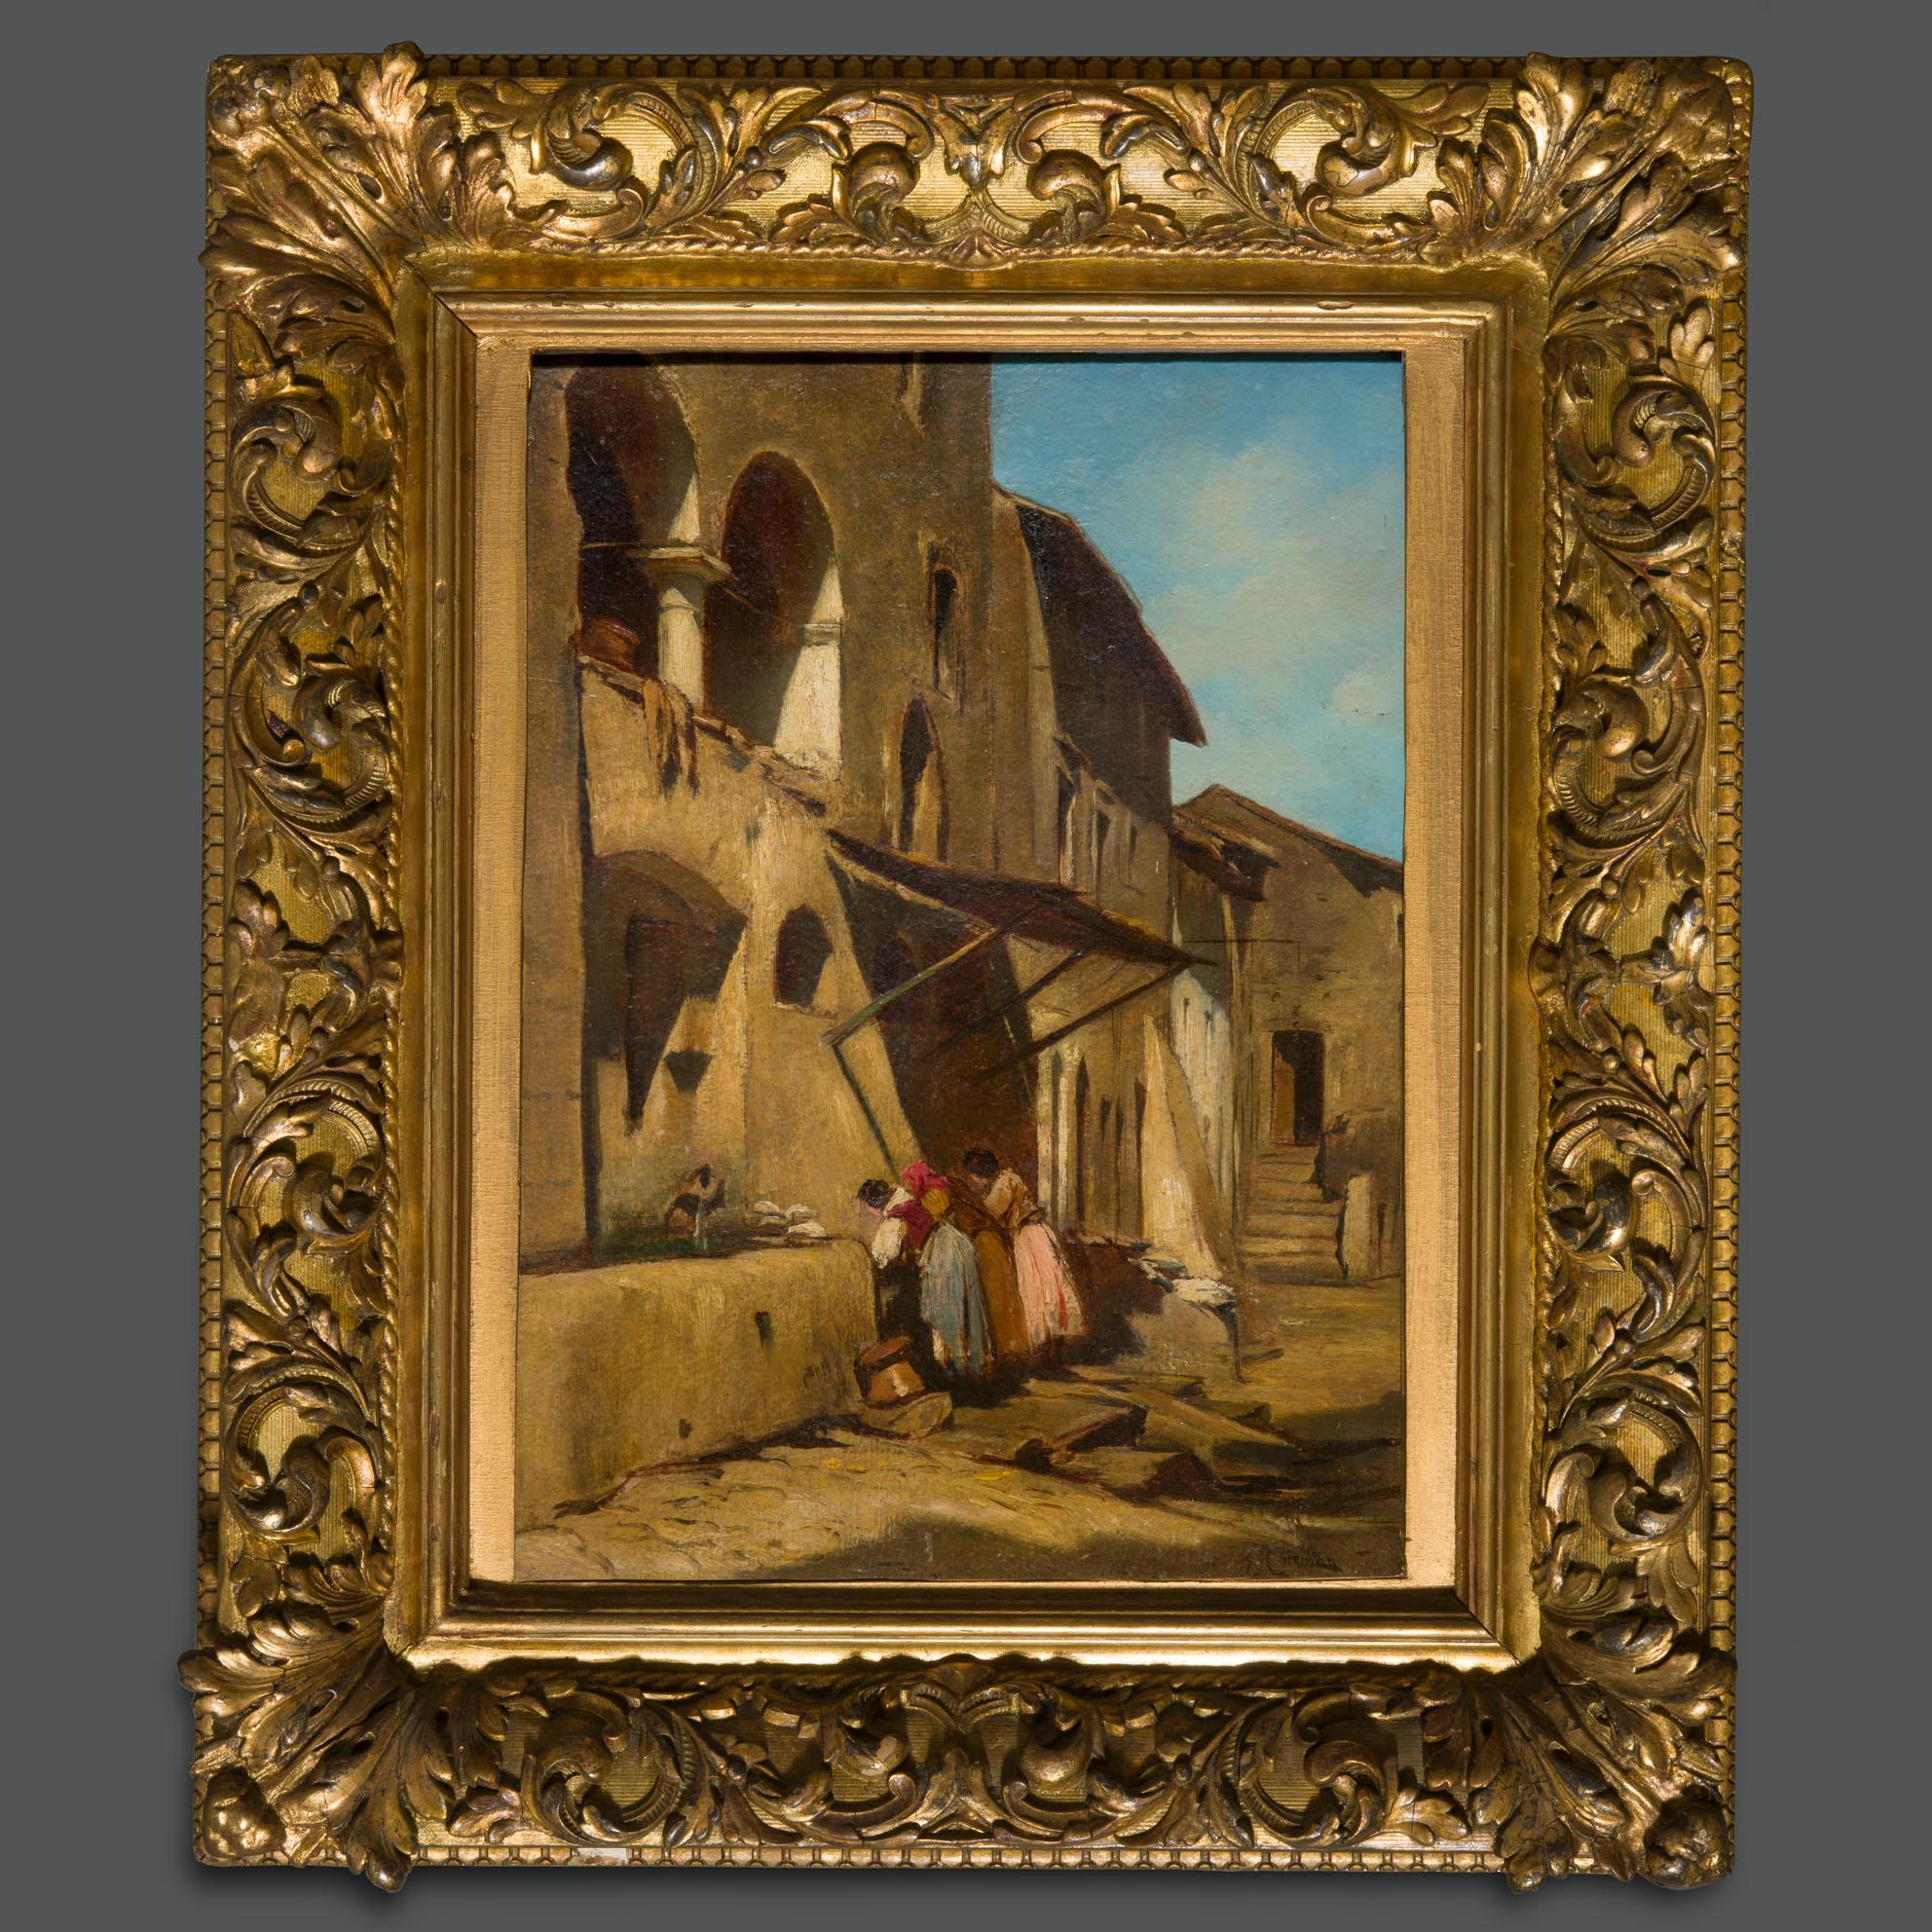 Ein bedeutendes Gemälde eines der repräsentativsten italienischen Künstler des 19. Jahrhunderts, Enrico Coleman.
Es stellt ein Dorf dar, das höchstwahrscheinlich aus Latium stammt, vielleicht ein Blick auf Anticoli Corrado, die Stadt, die für die